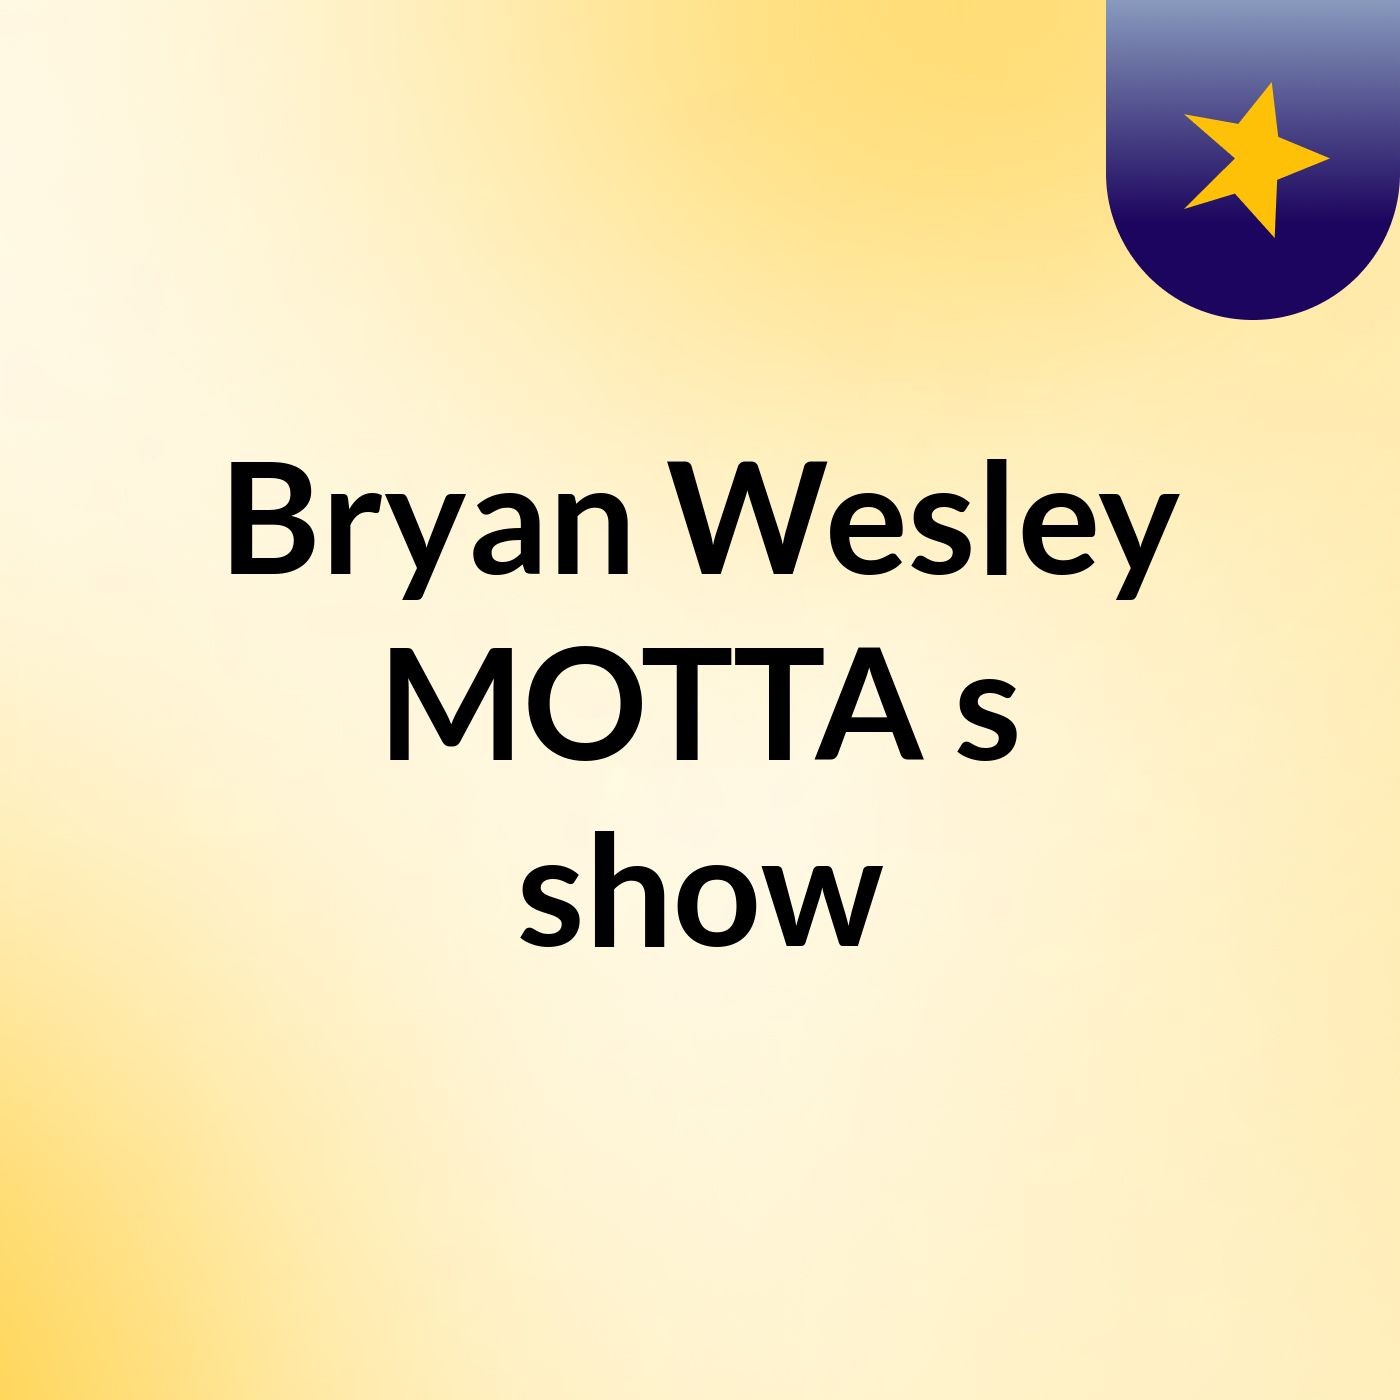 Bryan Wesley MOTTA's show